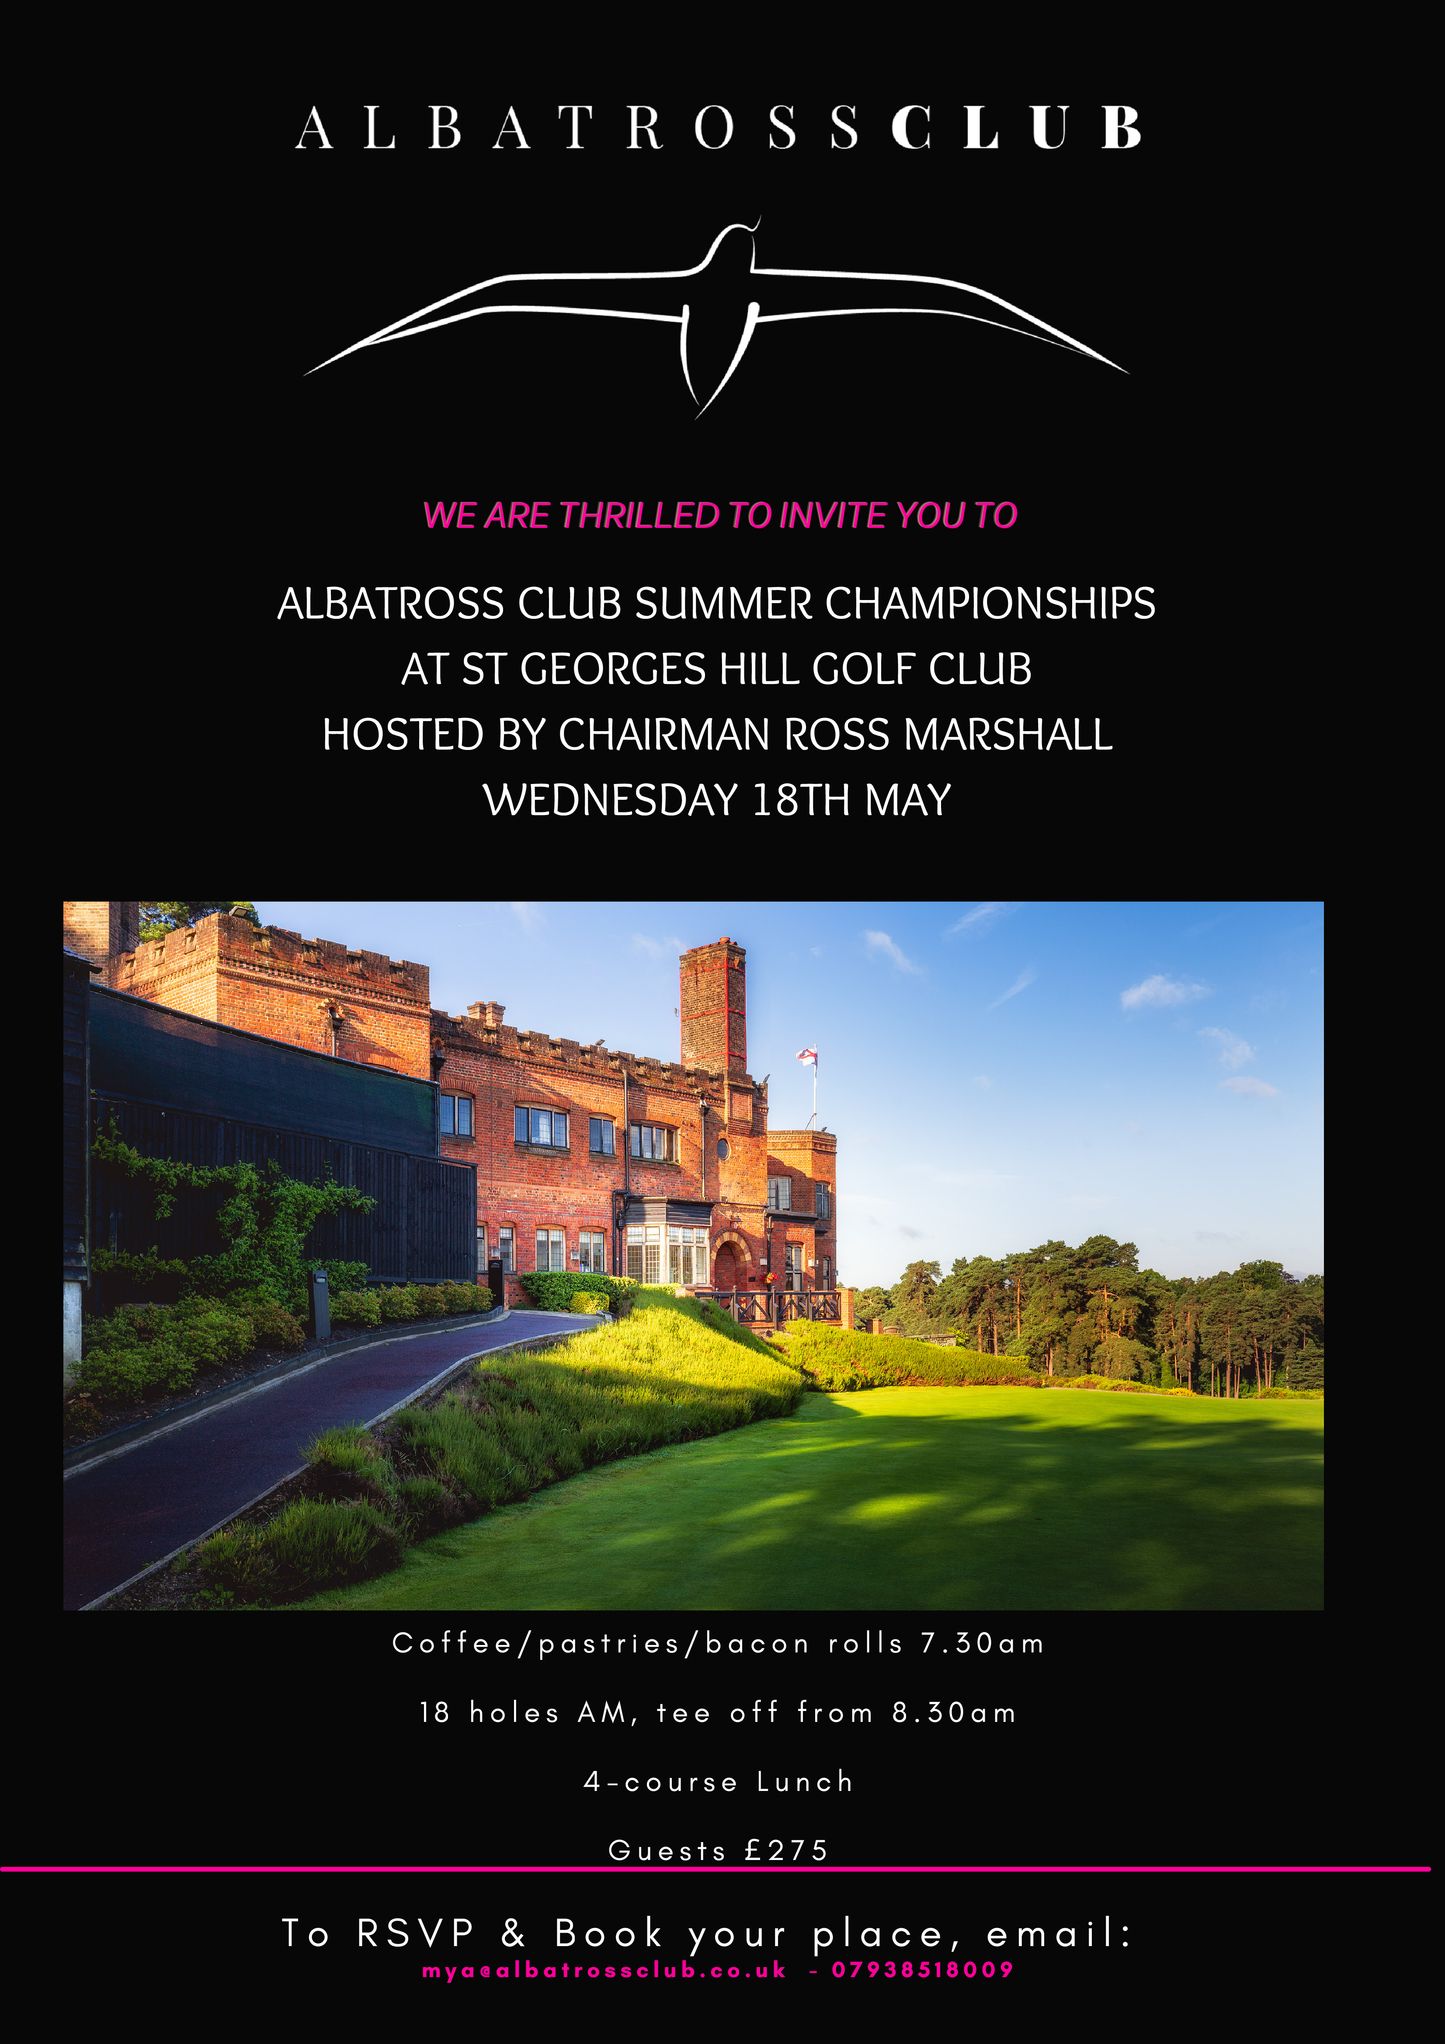 Albatross Club Summer Championships